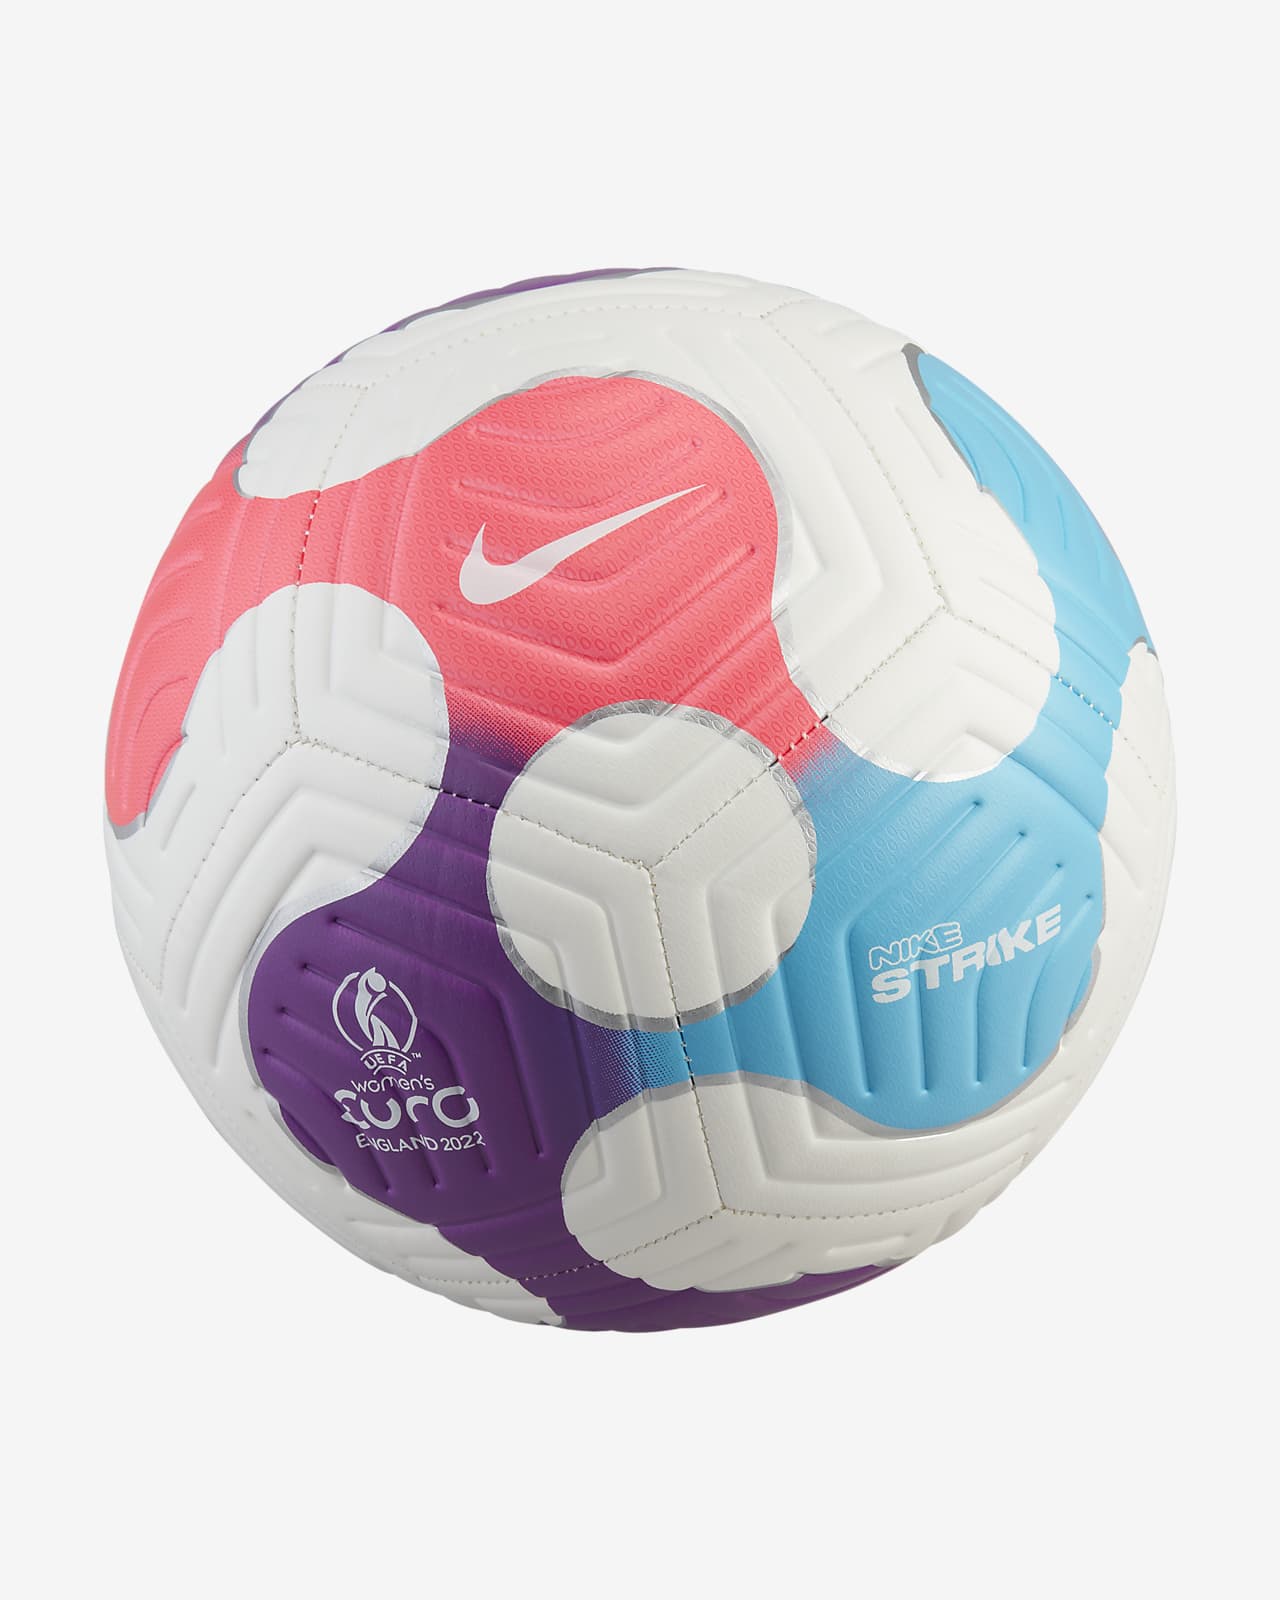 Μπάλα ευρωπαϊκού πρωταθλήματος ποδοσφαίρου γυναικών 2022 Nike Strike